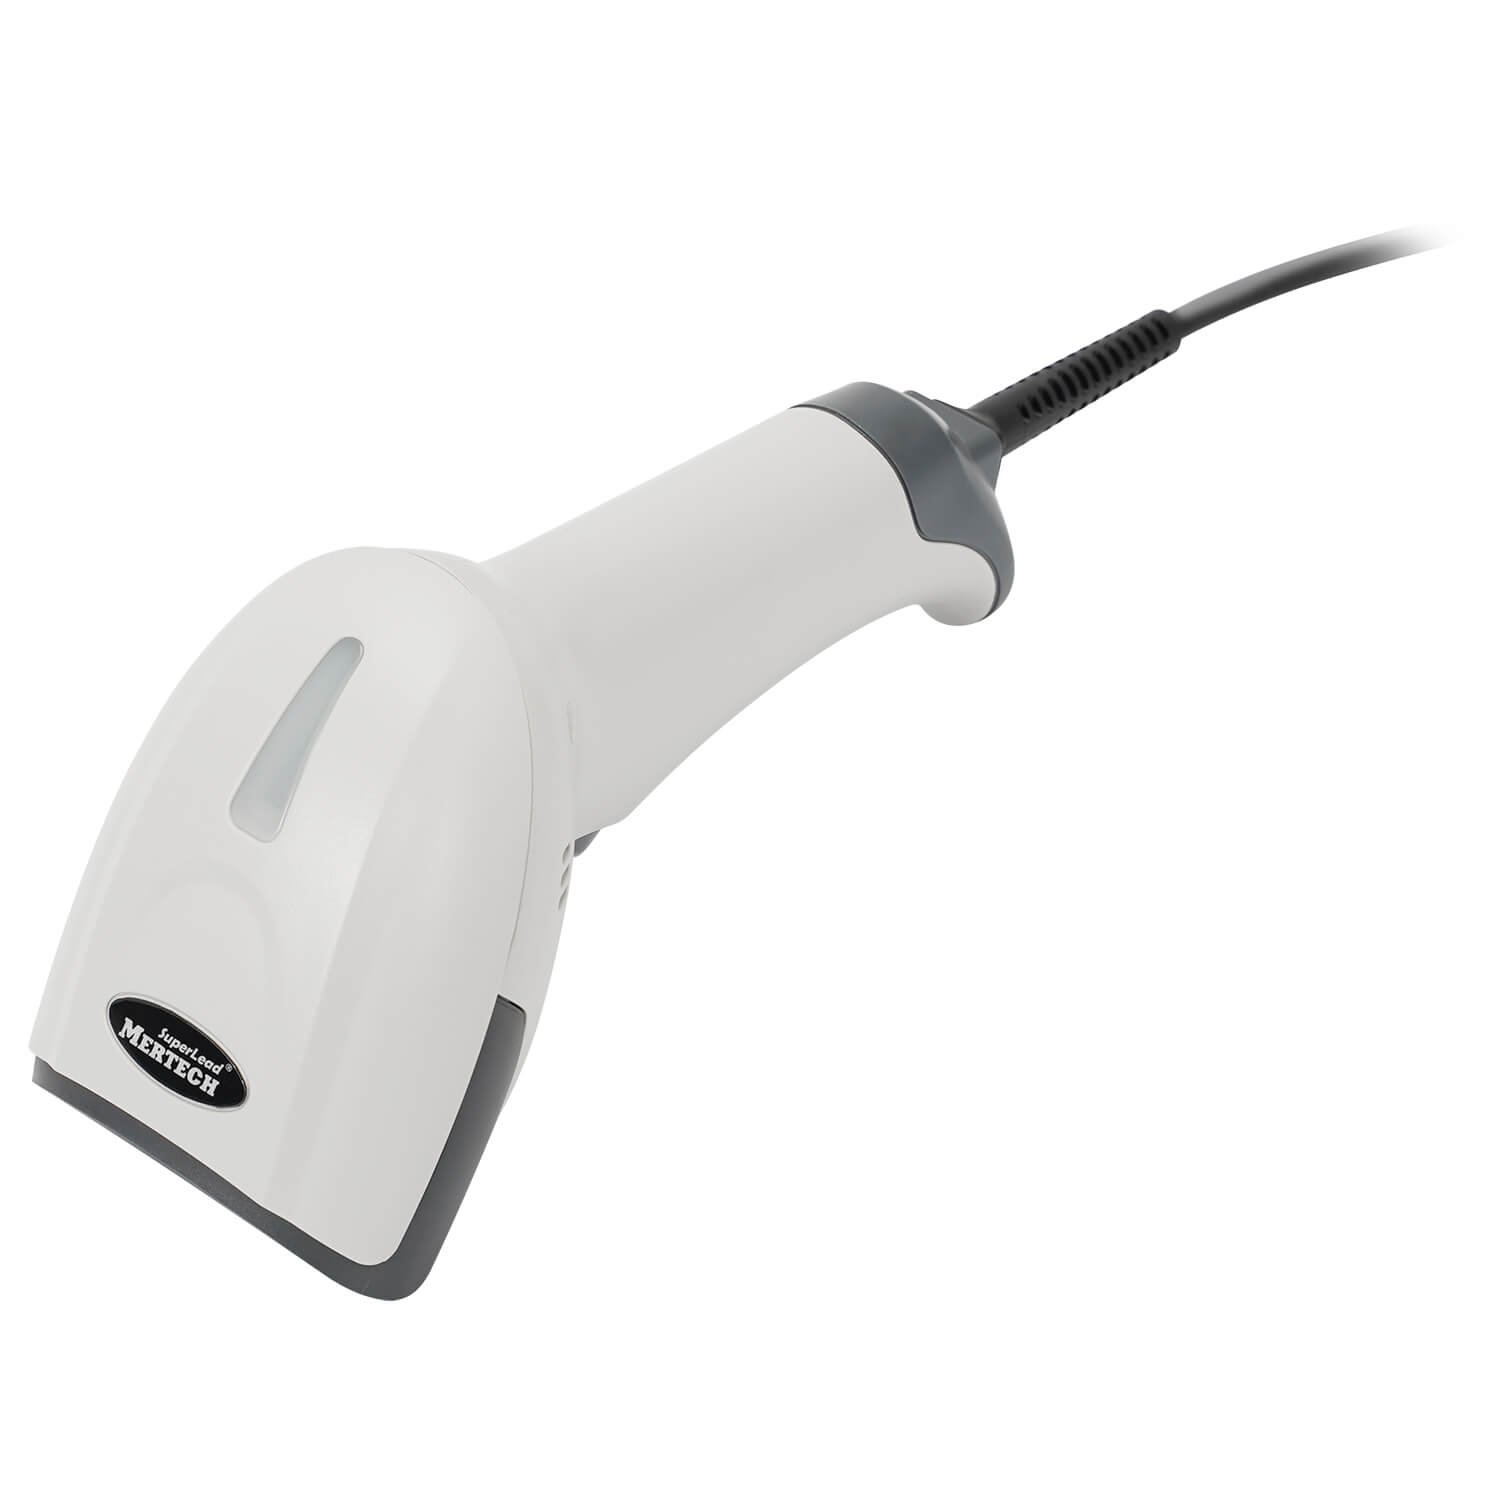 Сканер штрих-кода MERTECH 2310 P2D HR SUPERLEAD USB White (4832)